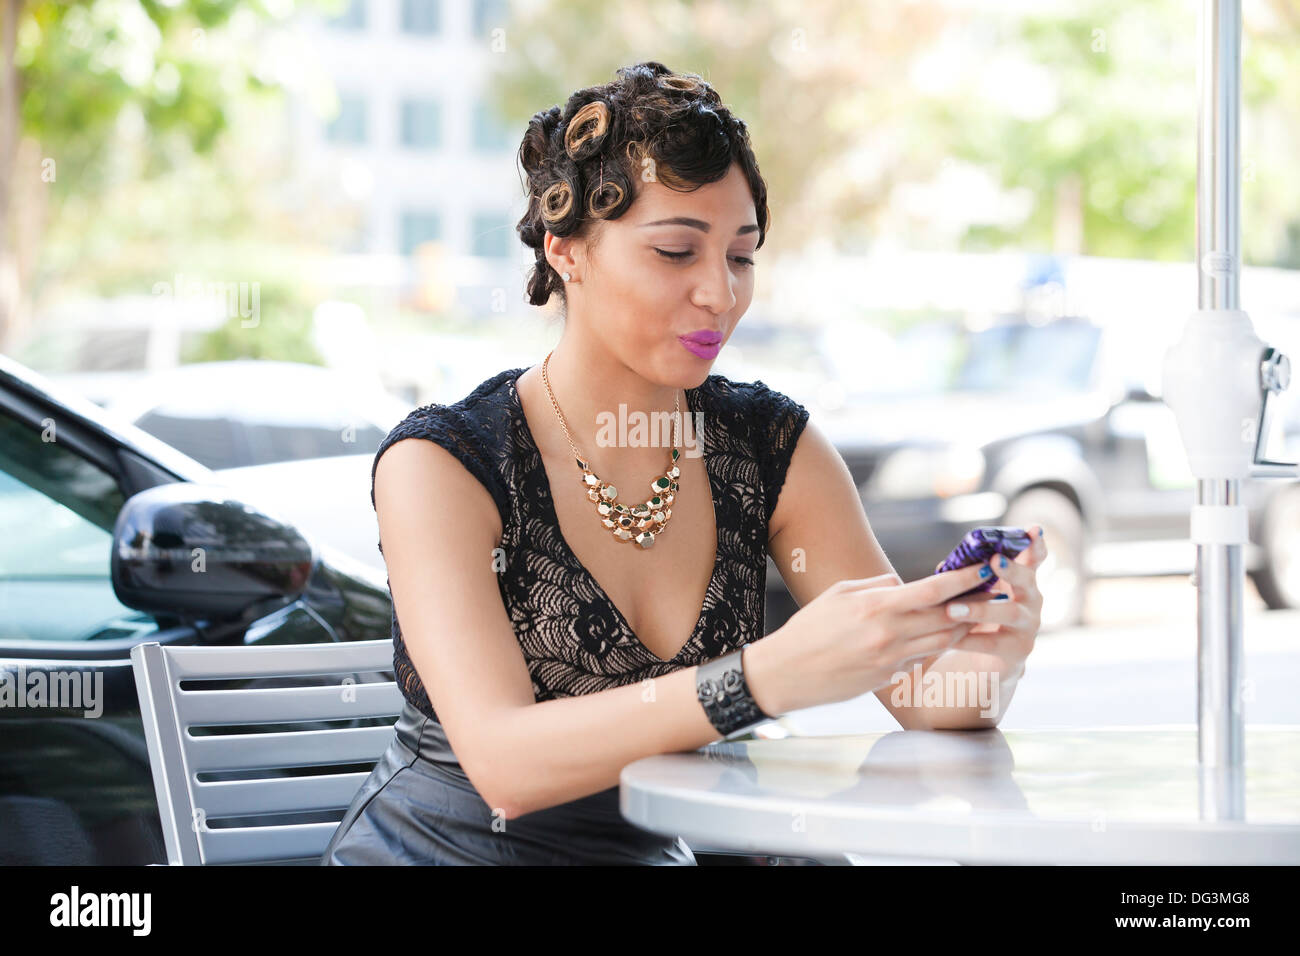 Woman using smart phone - USA Stock Photo